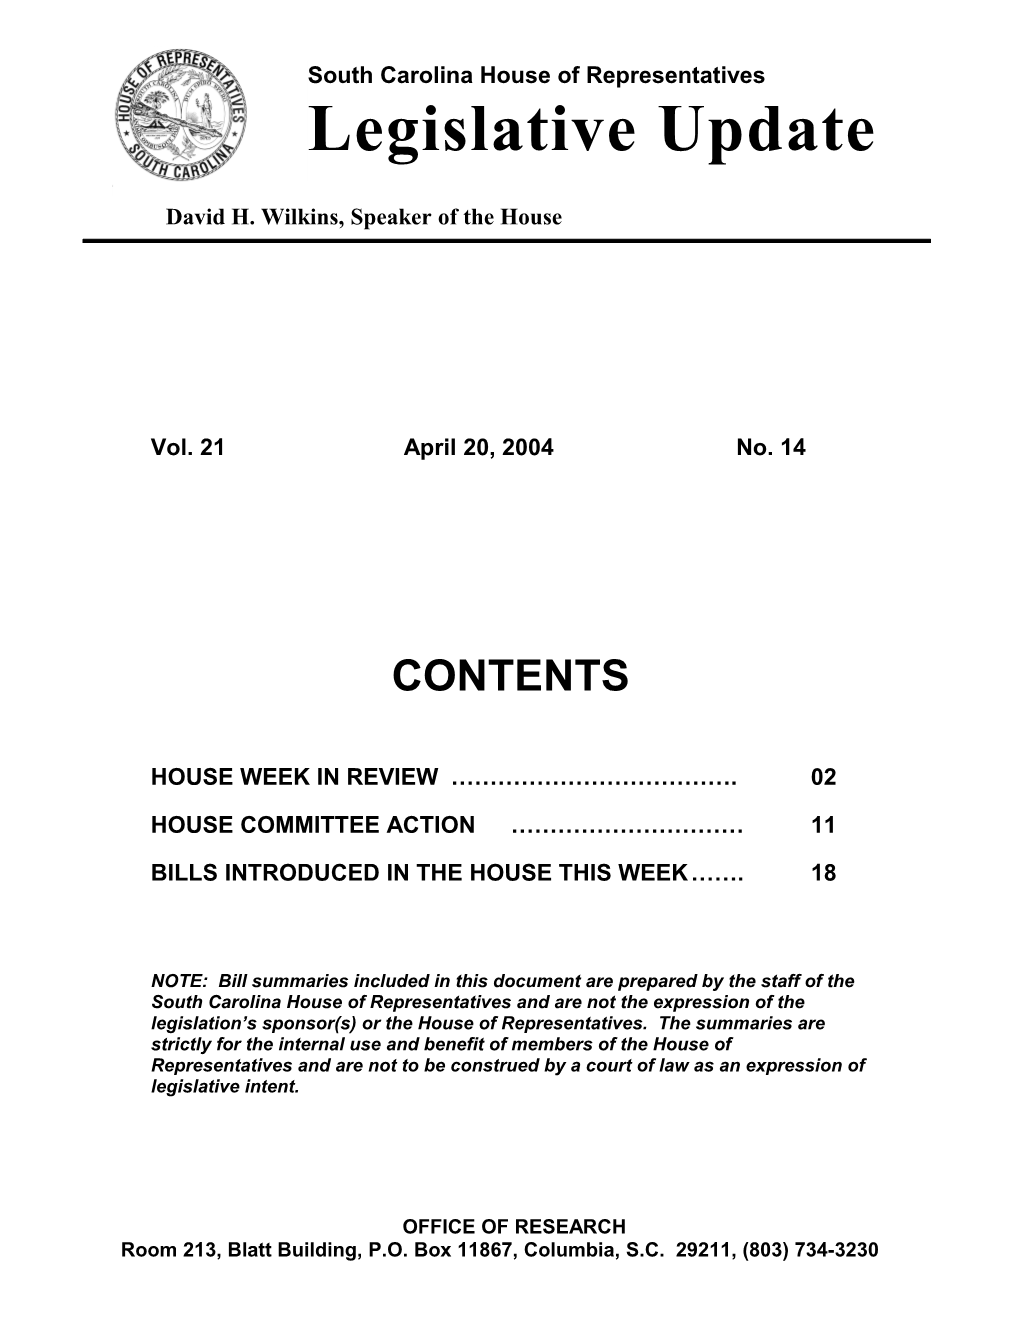 Legislative Update - Vol. 21 No. 14 April 20, 2004 - South Carolina Legislature Online